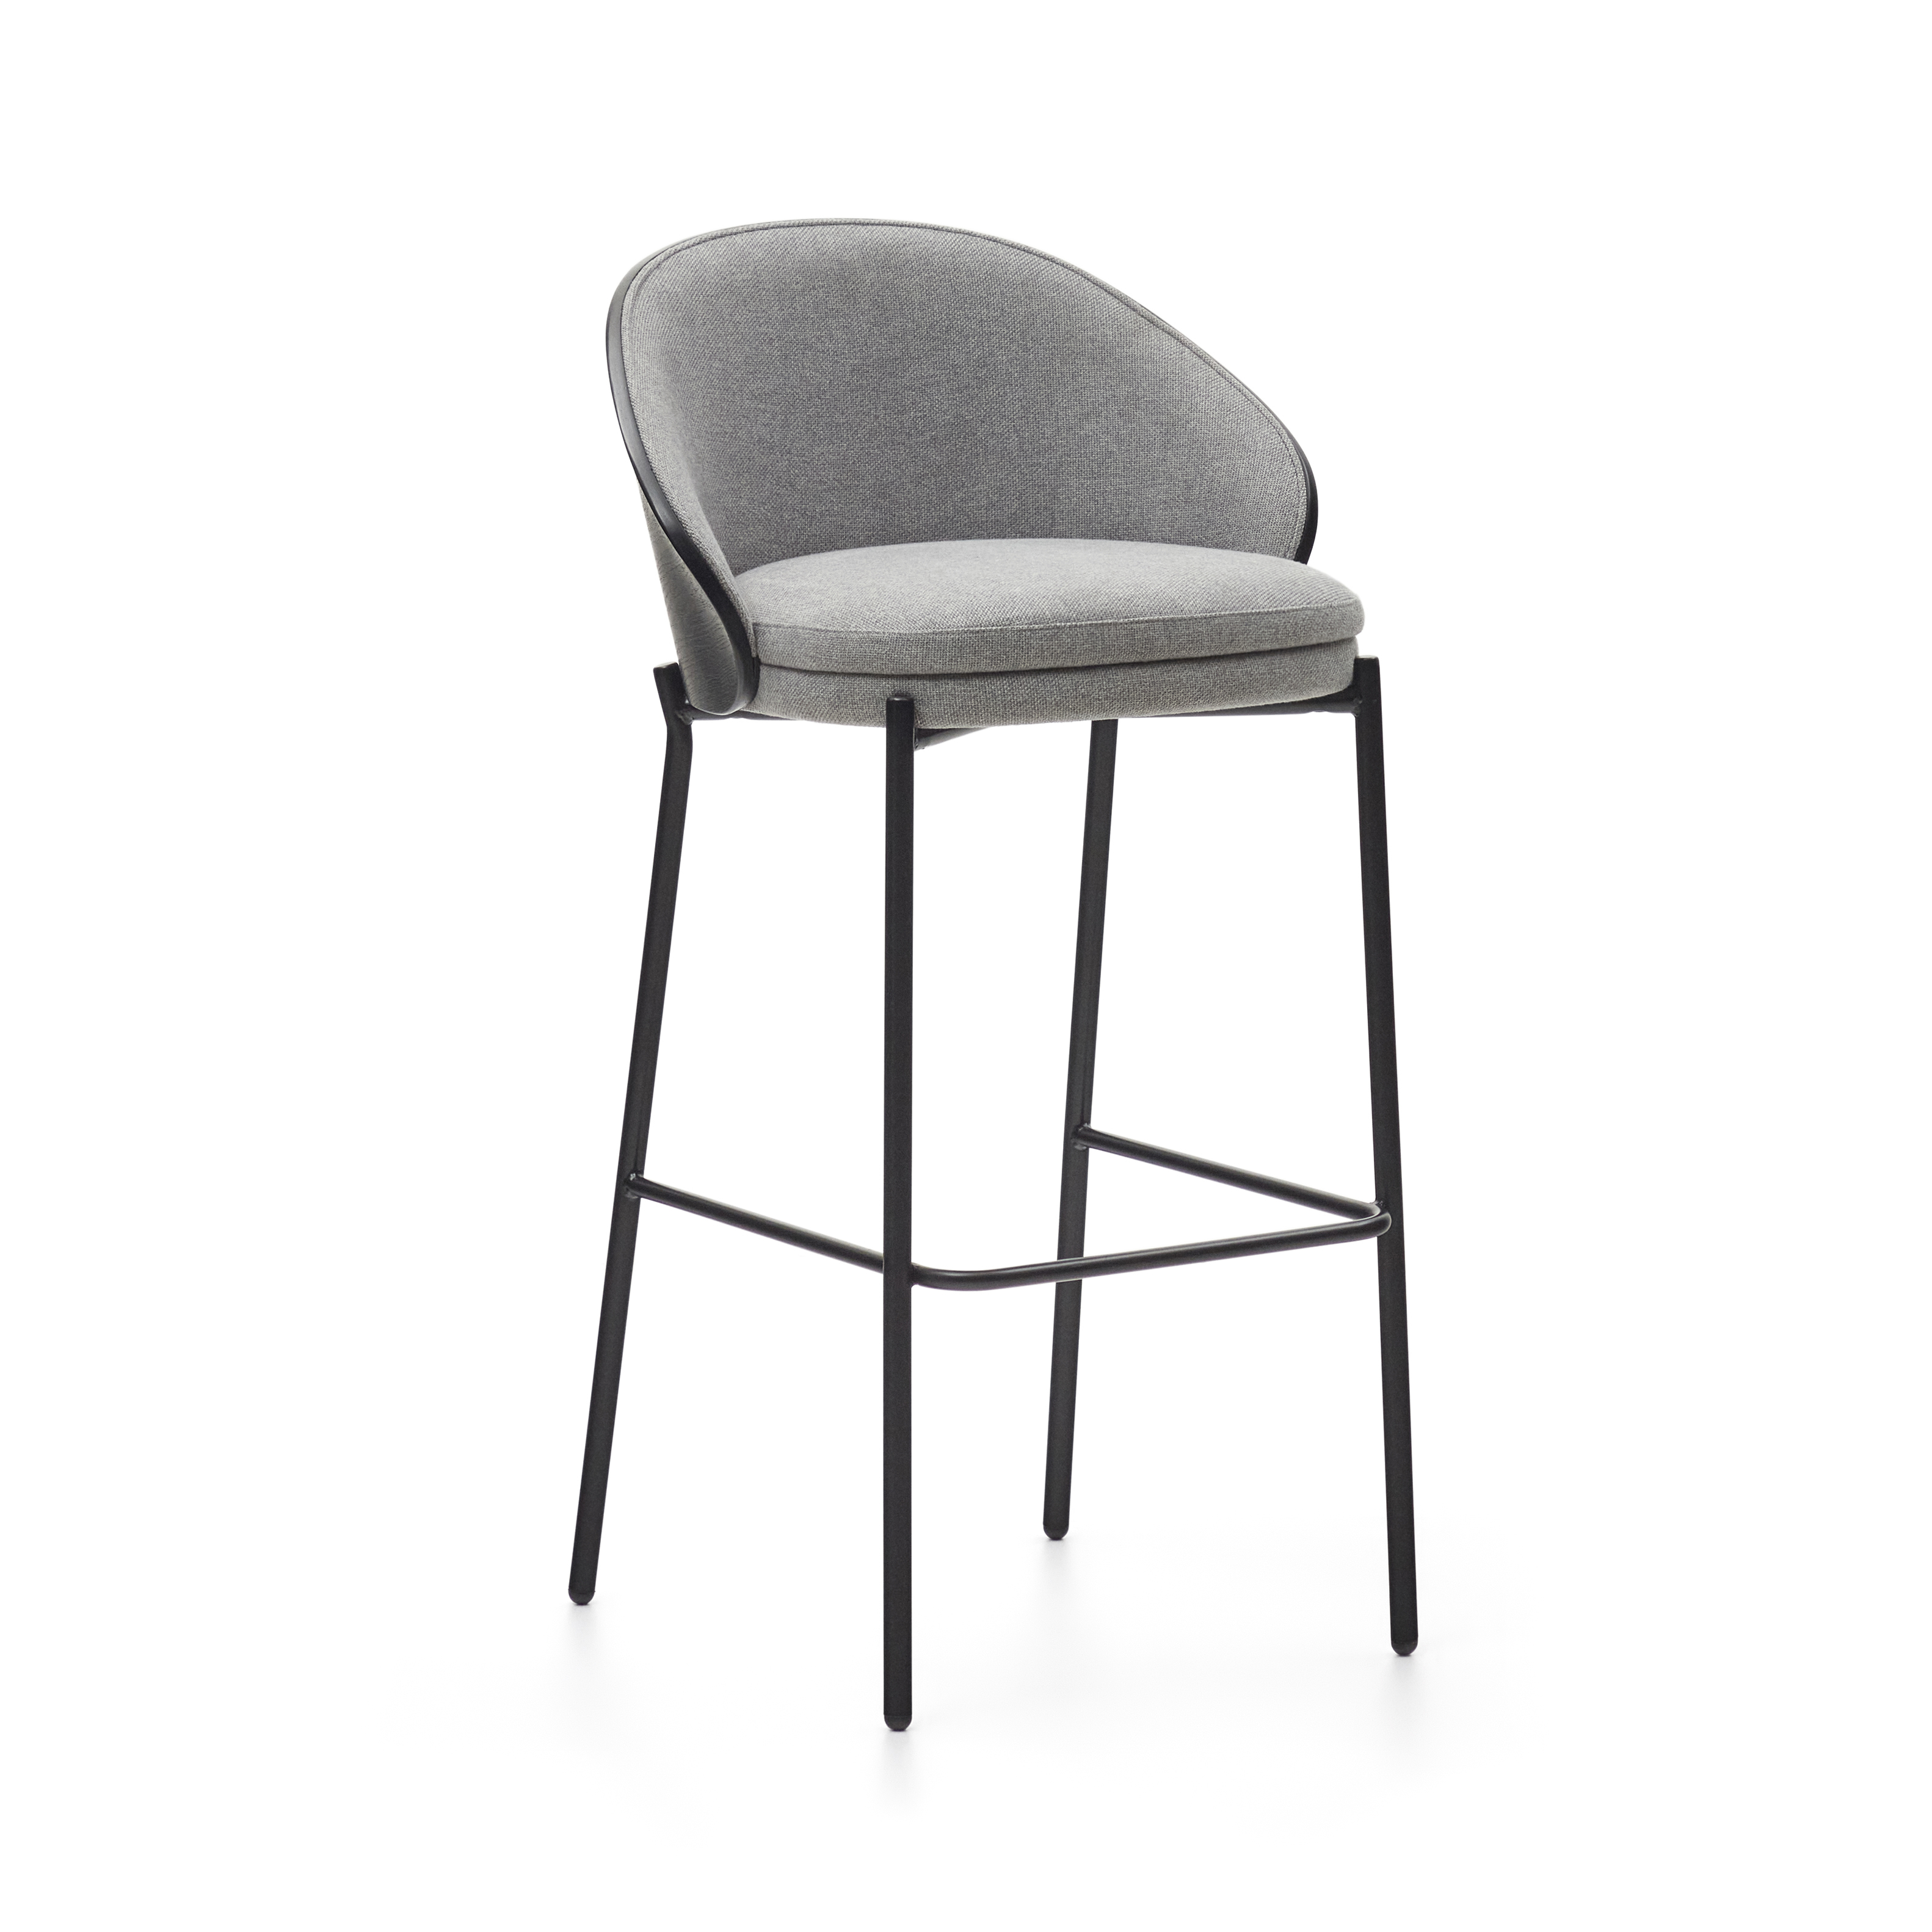 Billede af LAFORMA Eamy barstol, m. ryglæn og fodstøtte - lysegrå stof, sort askefinér og sort stål